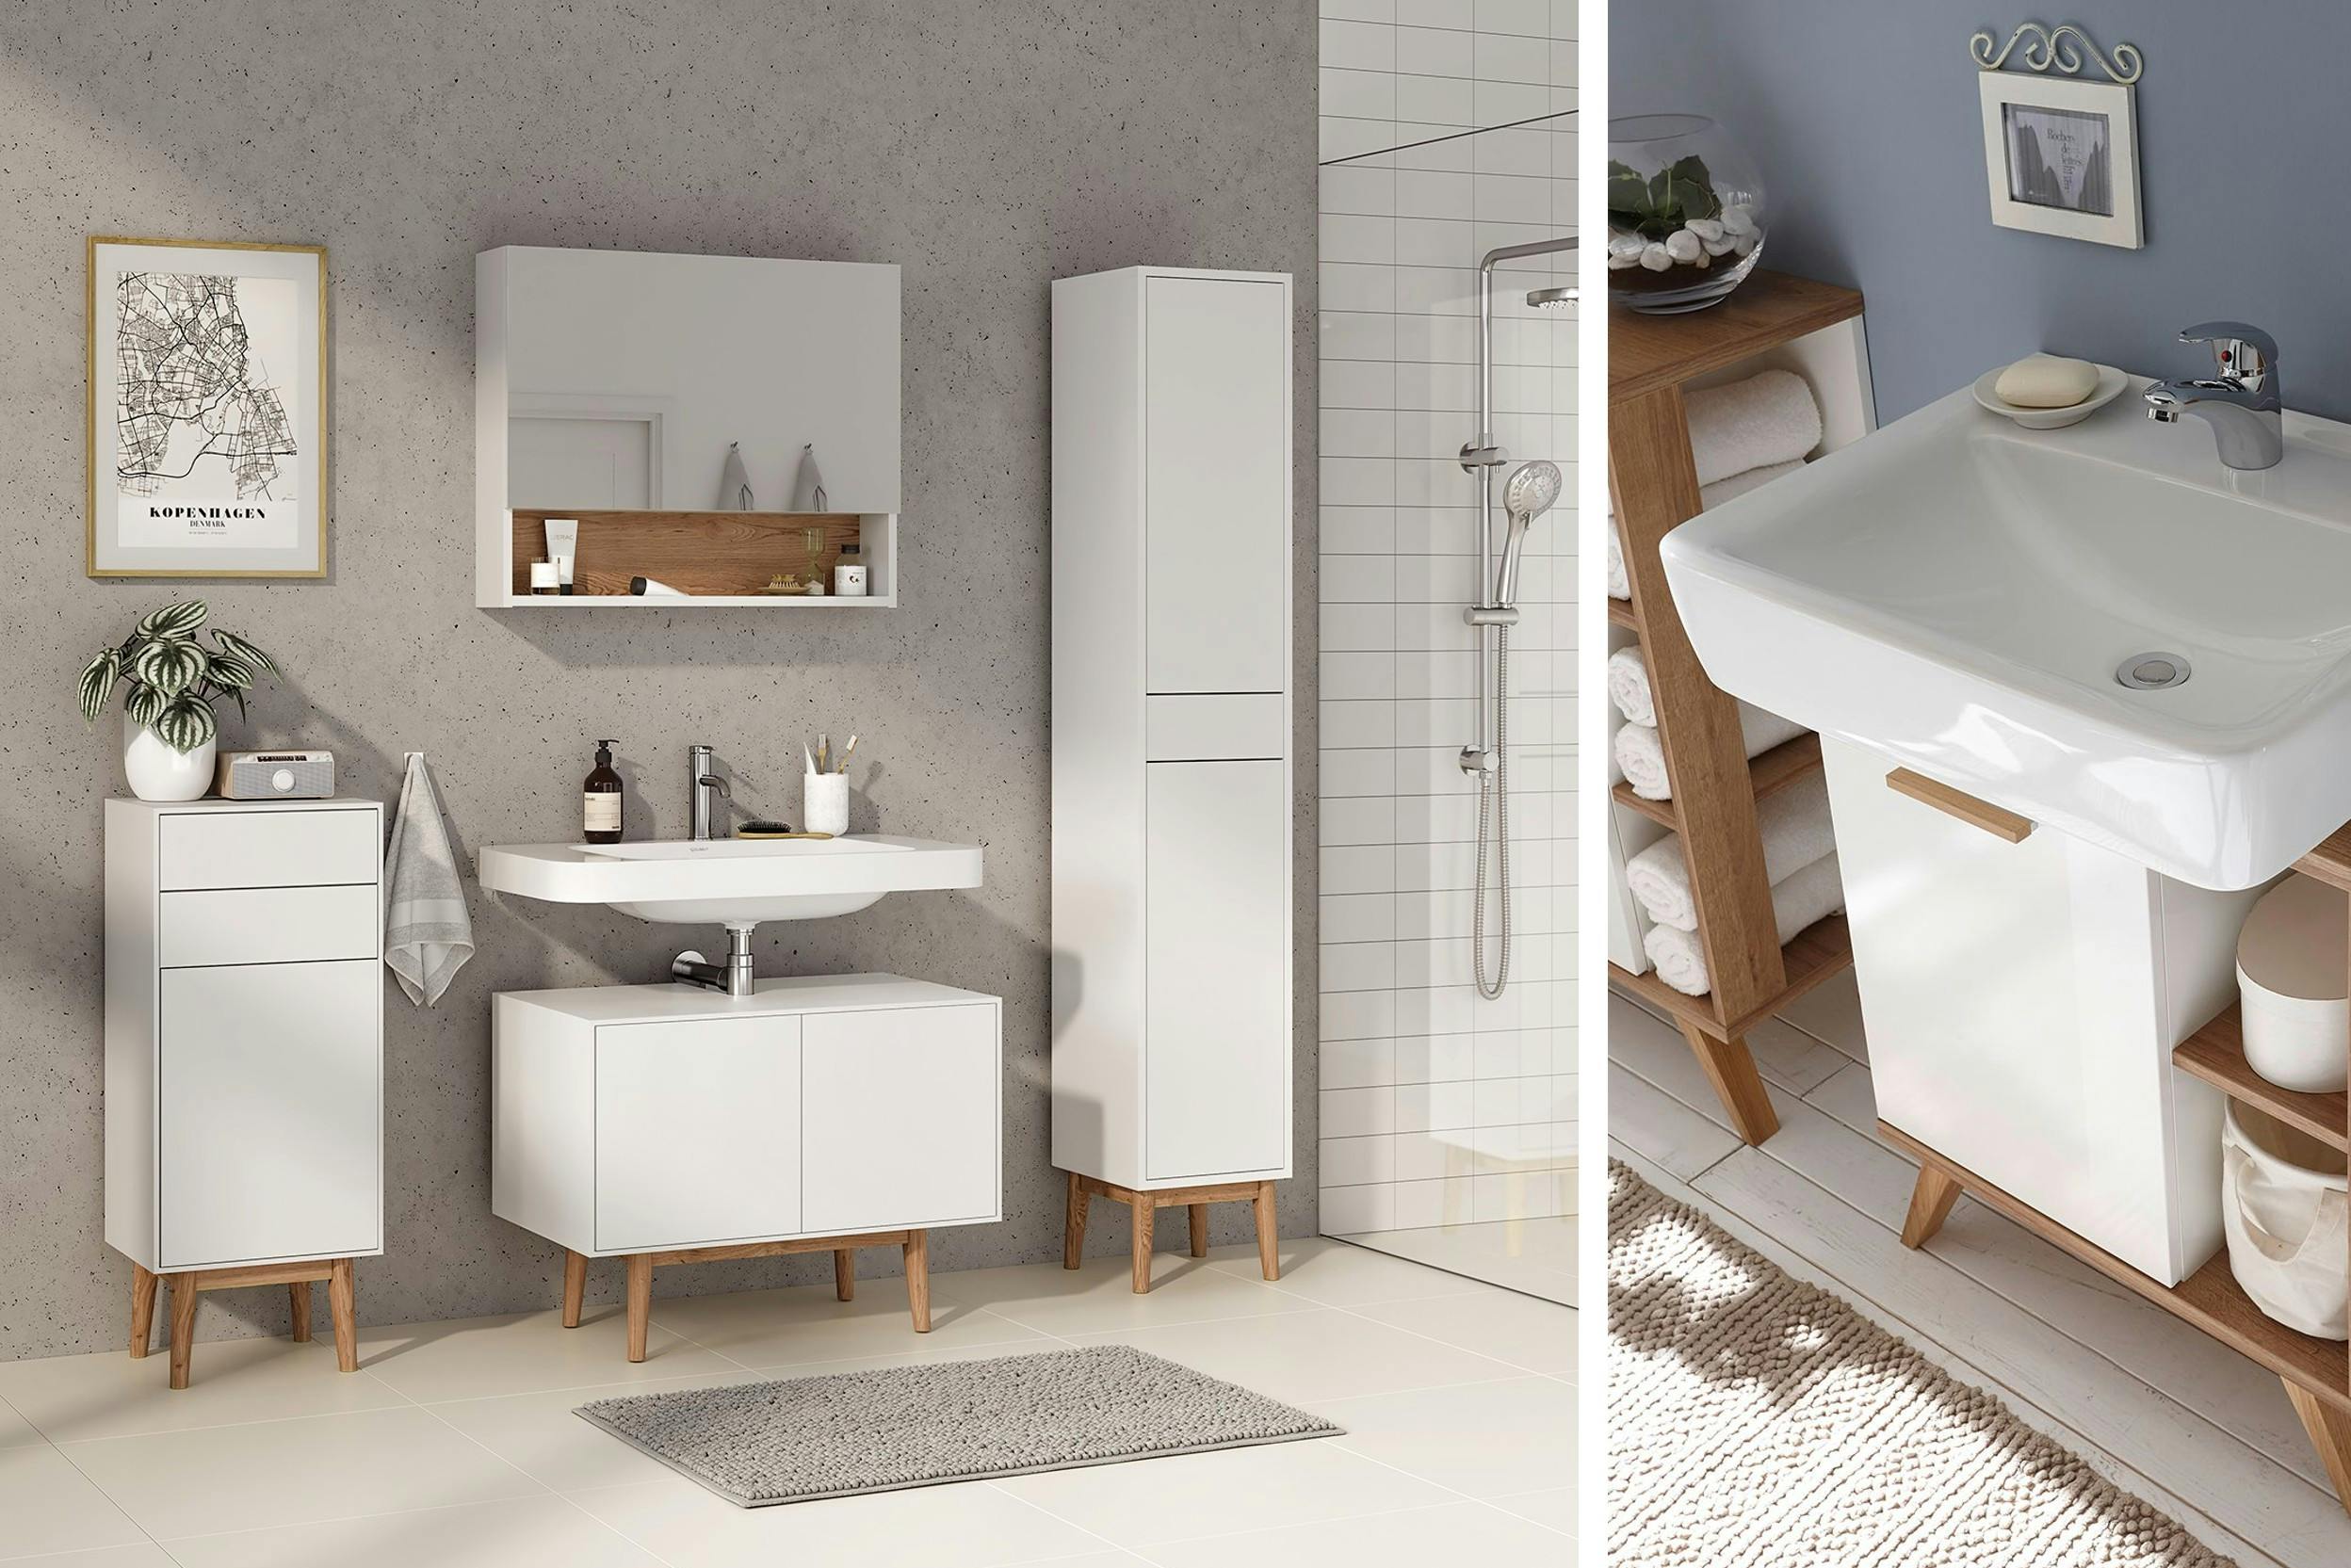 Scandinavische badkamers, witte badkamermeubels met hout, wandafbeelding Kopenhagen